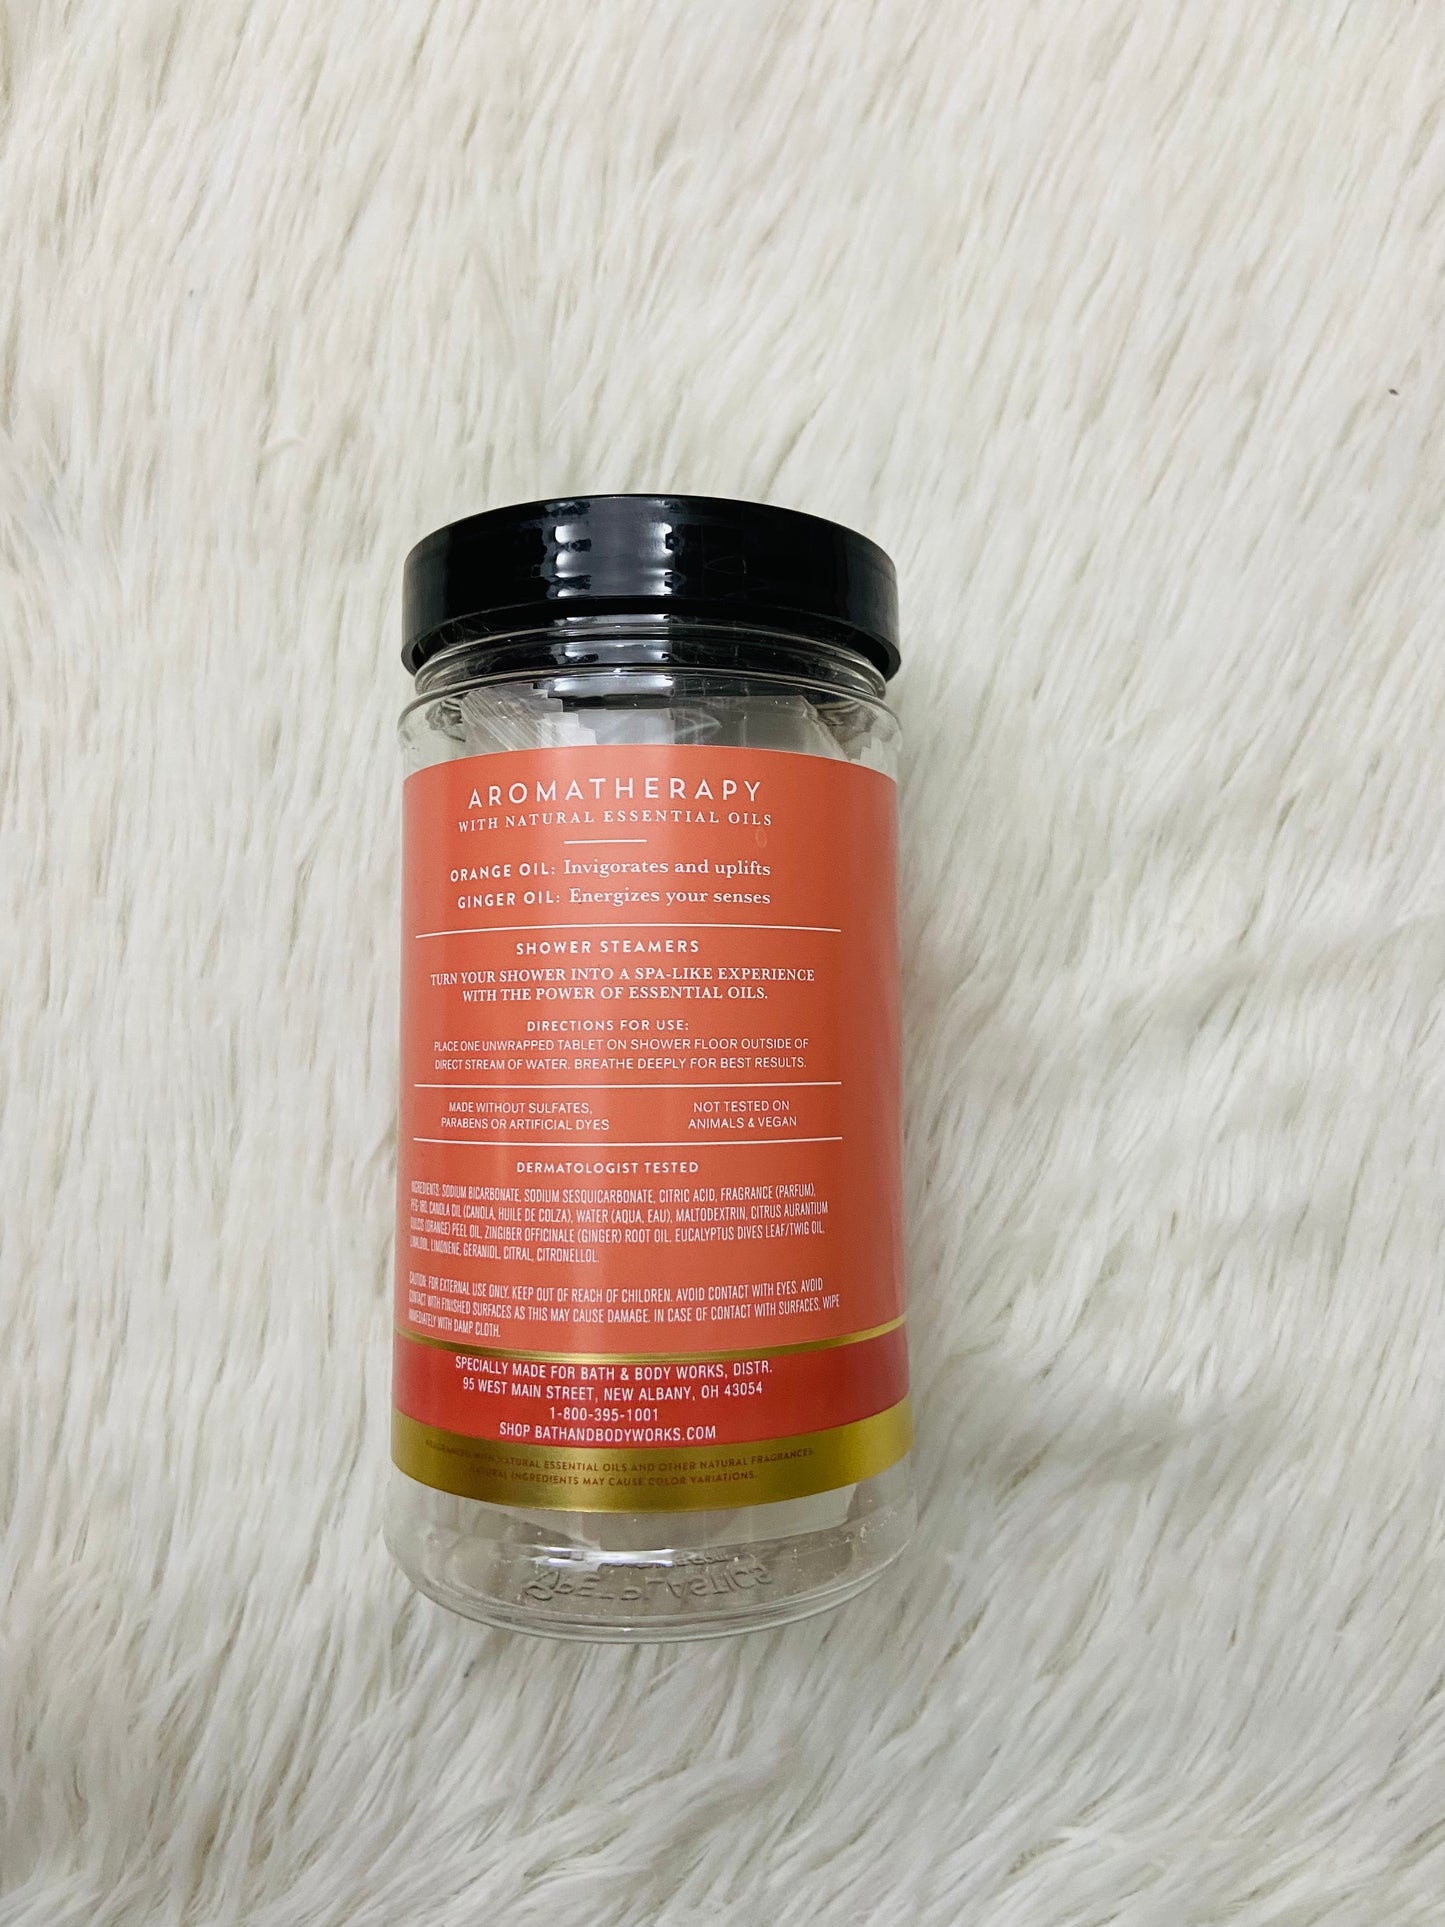 Bombas Aromáticas para ducha BATH & BODY WORKS original, aromatherapy naranja y jengibre con aceites naturales y esenciales  orange + ginger, 6 tabletas.